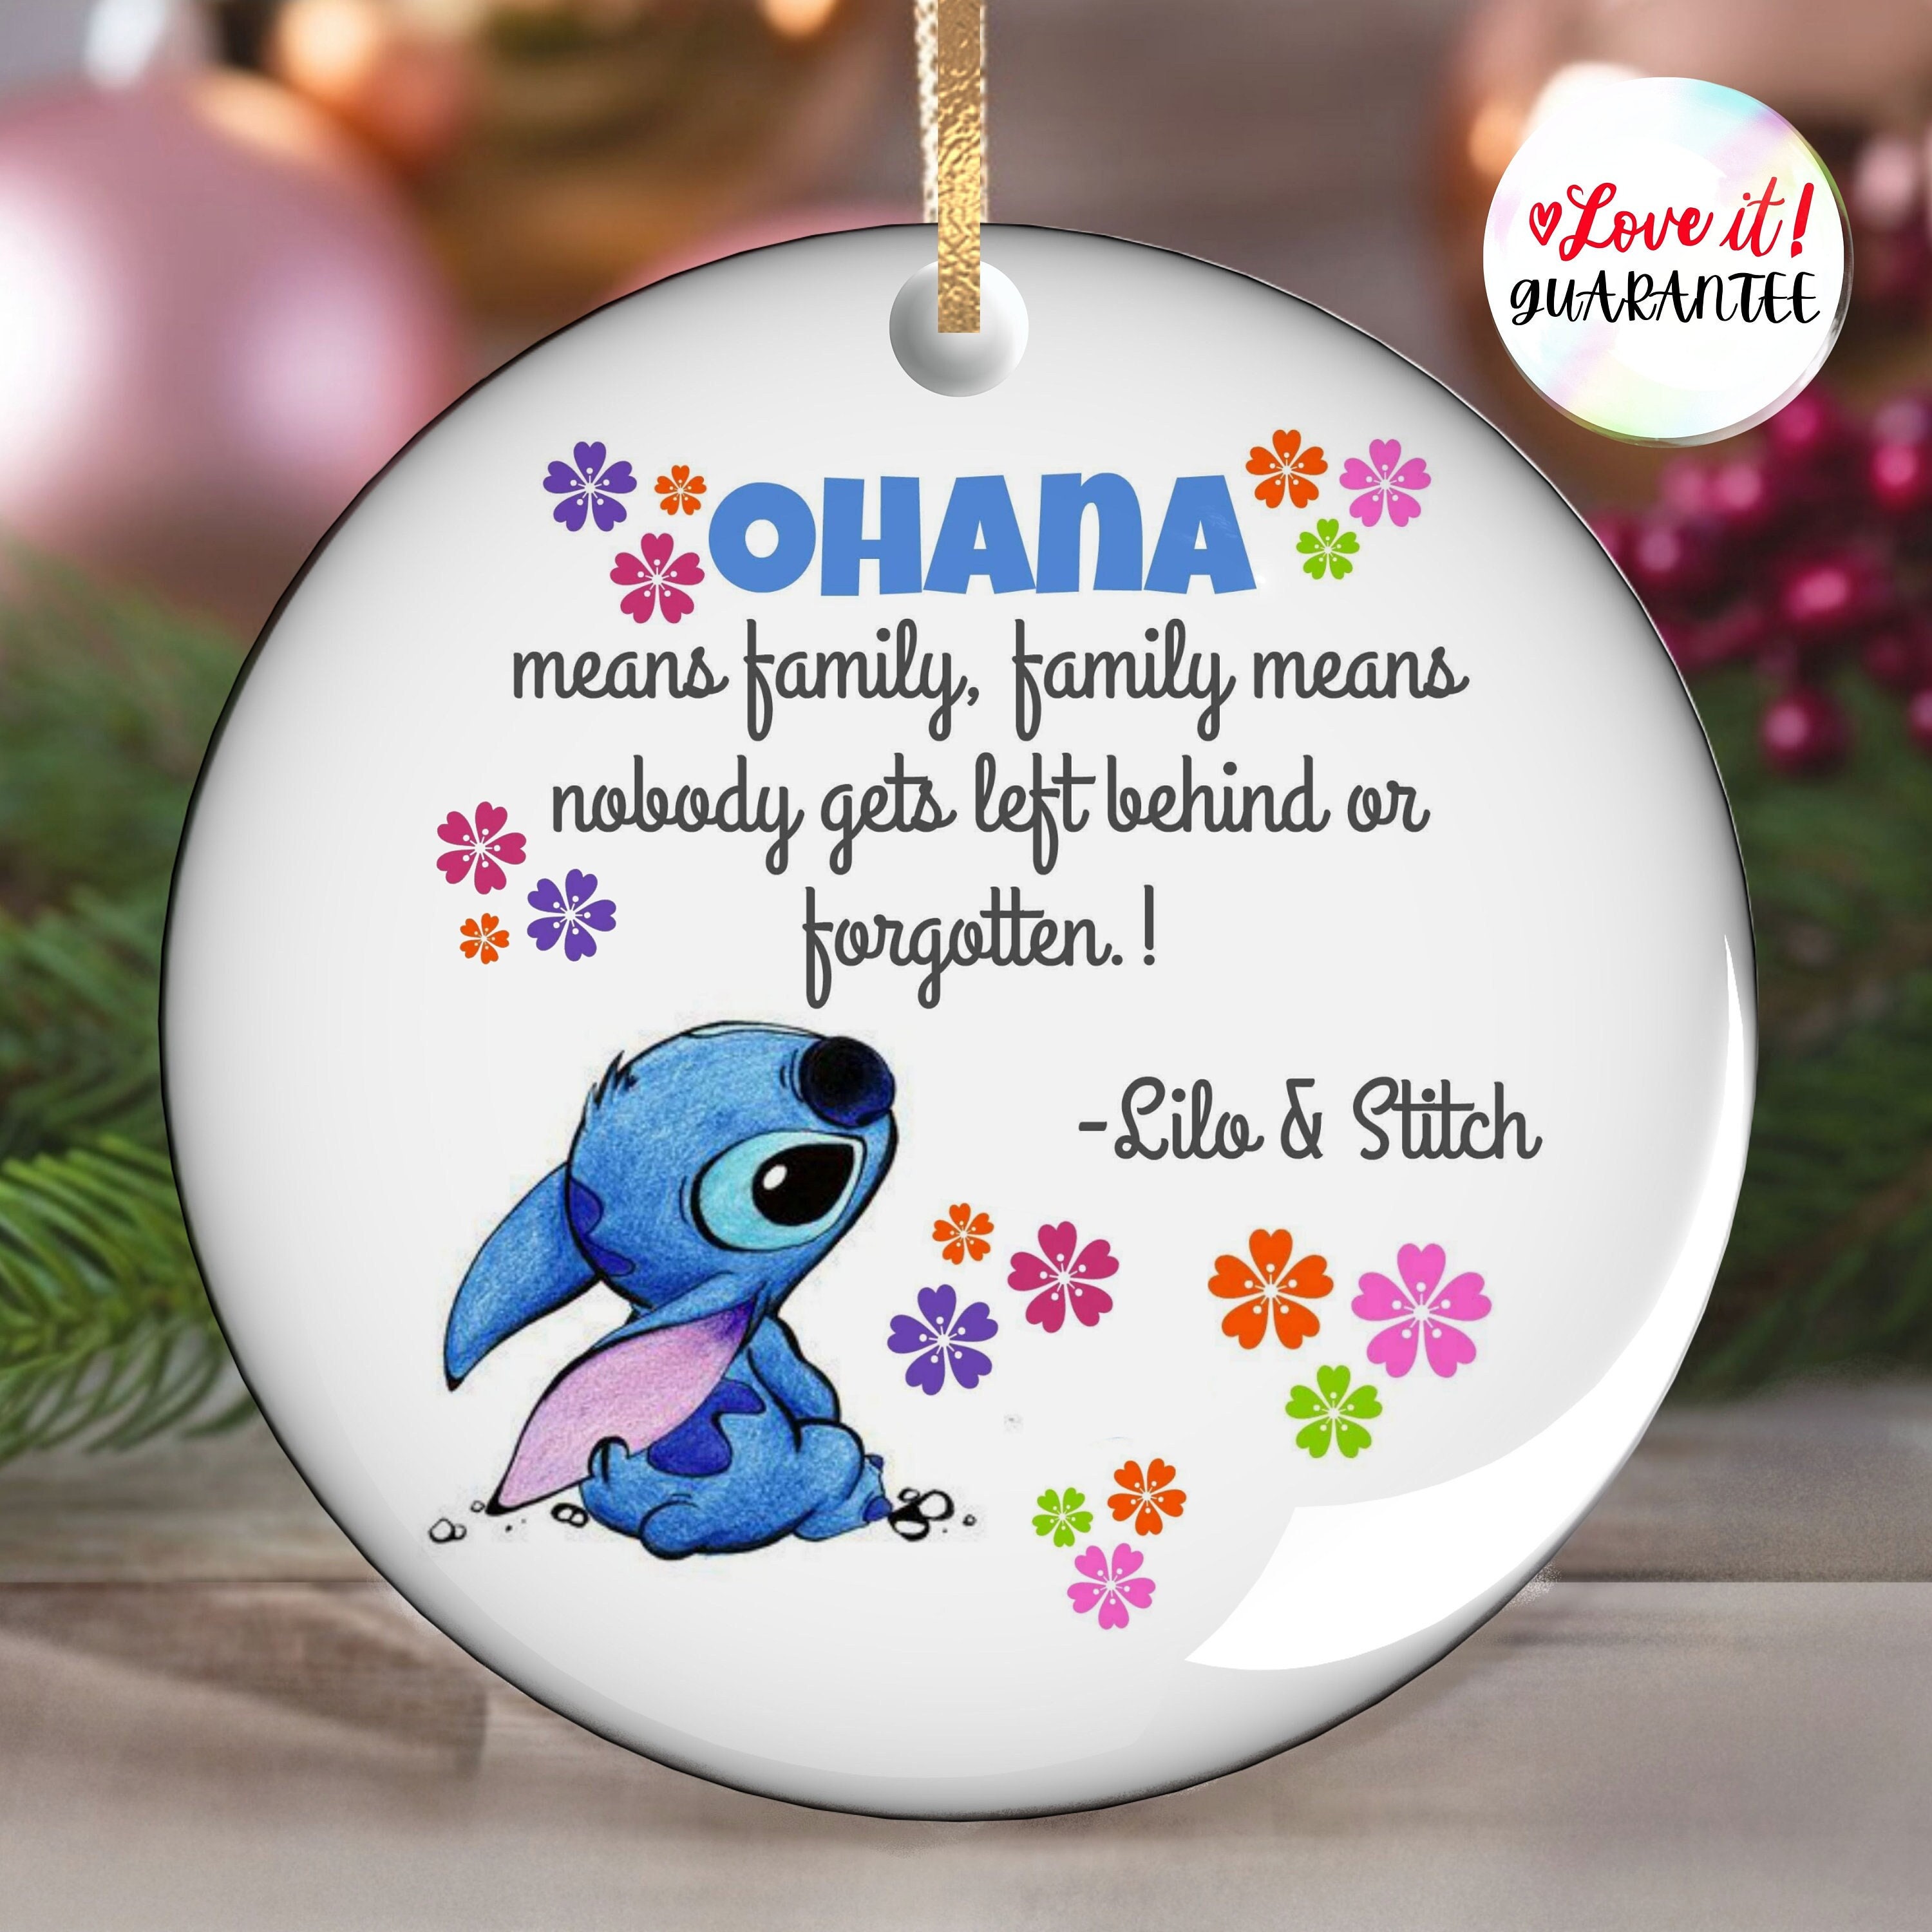 Décoration en céramique Disney Stitch Chfistmas, Ohana signifie famille.  Citations Disney -  France